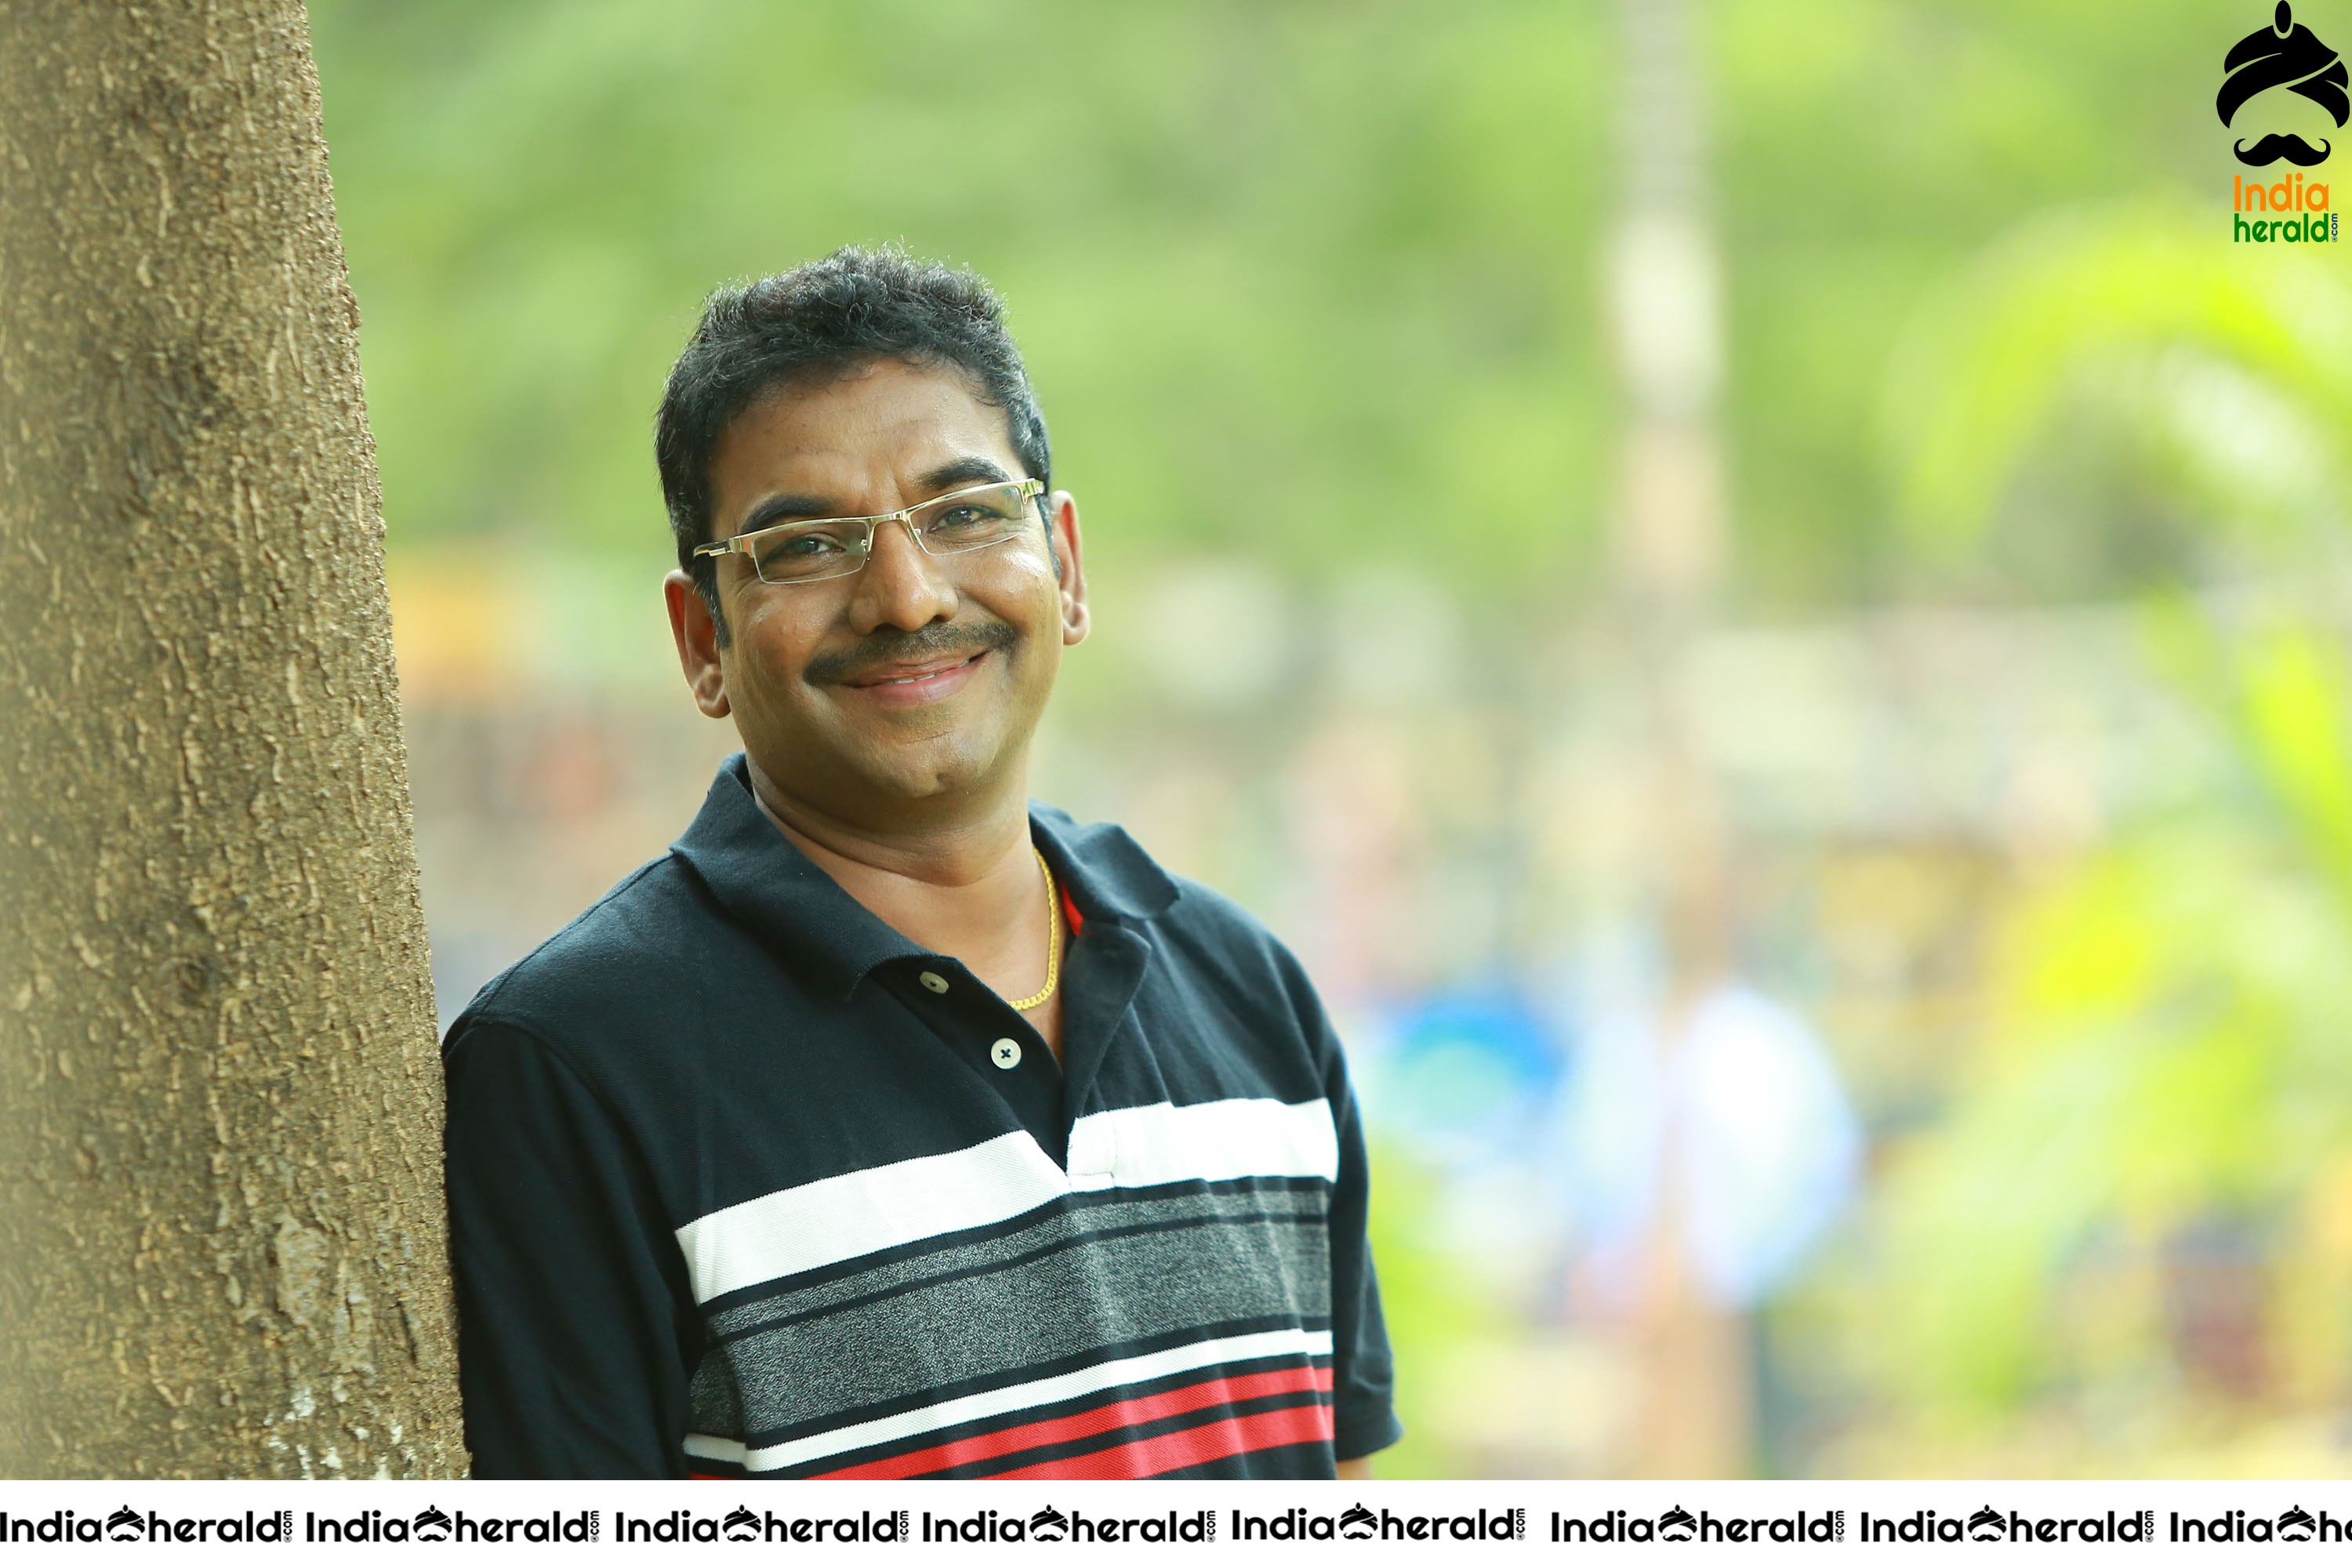 M6 Movie Producer Viswanath Tanneeru Stills